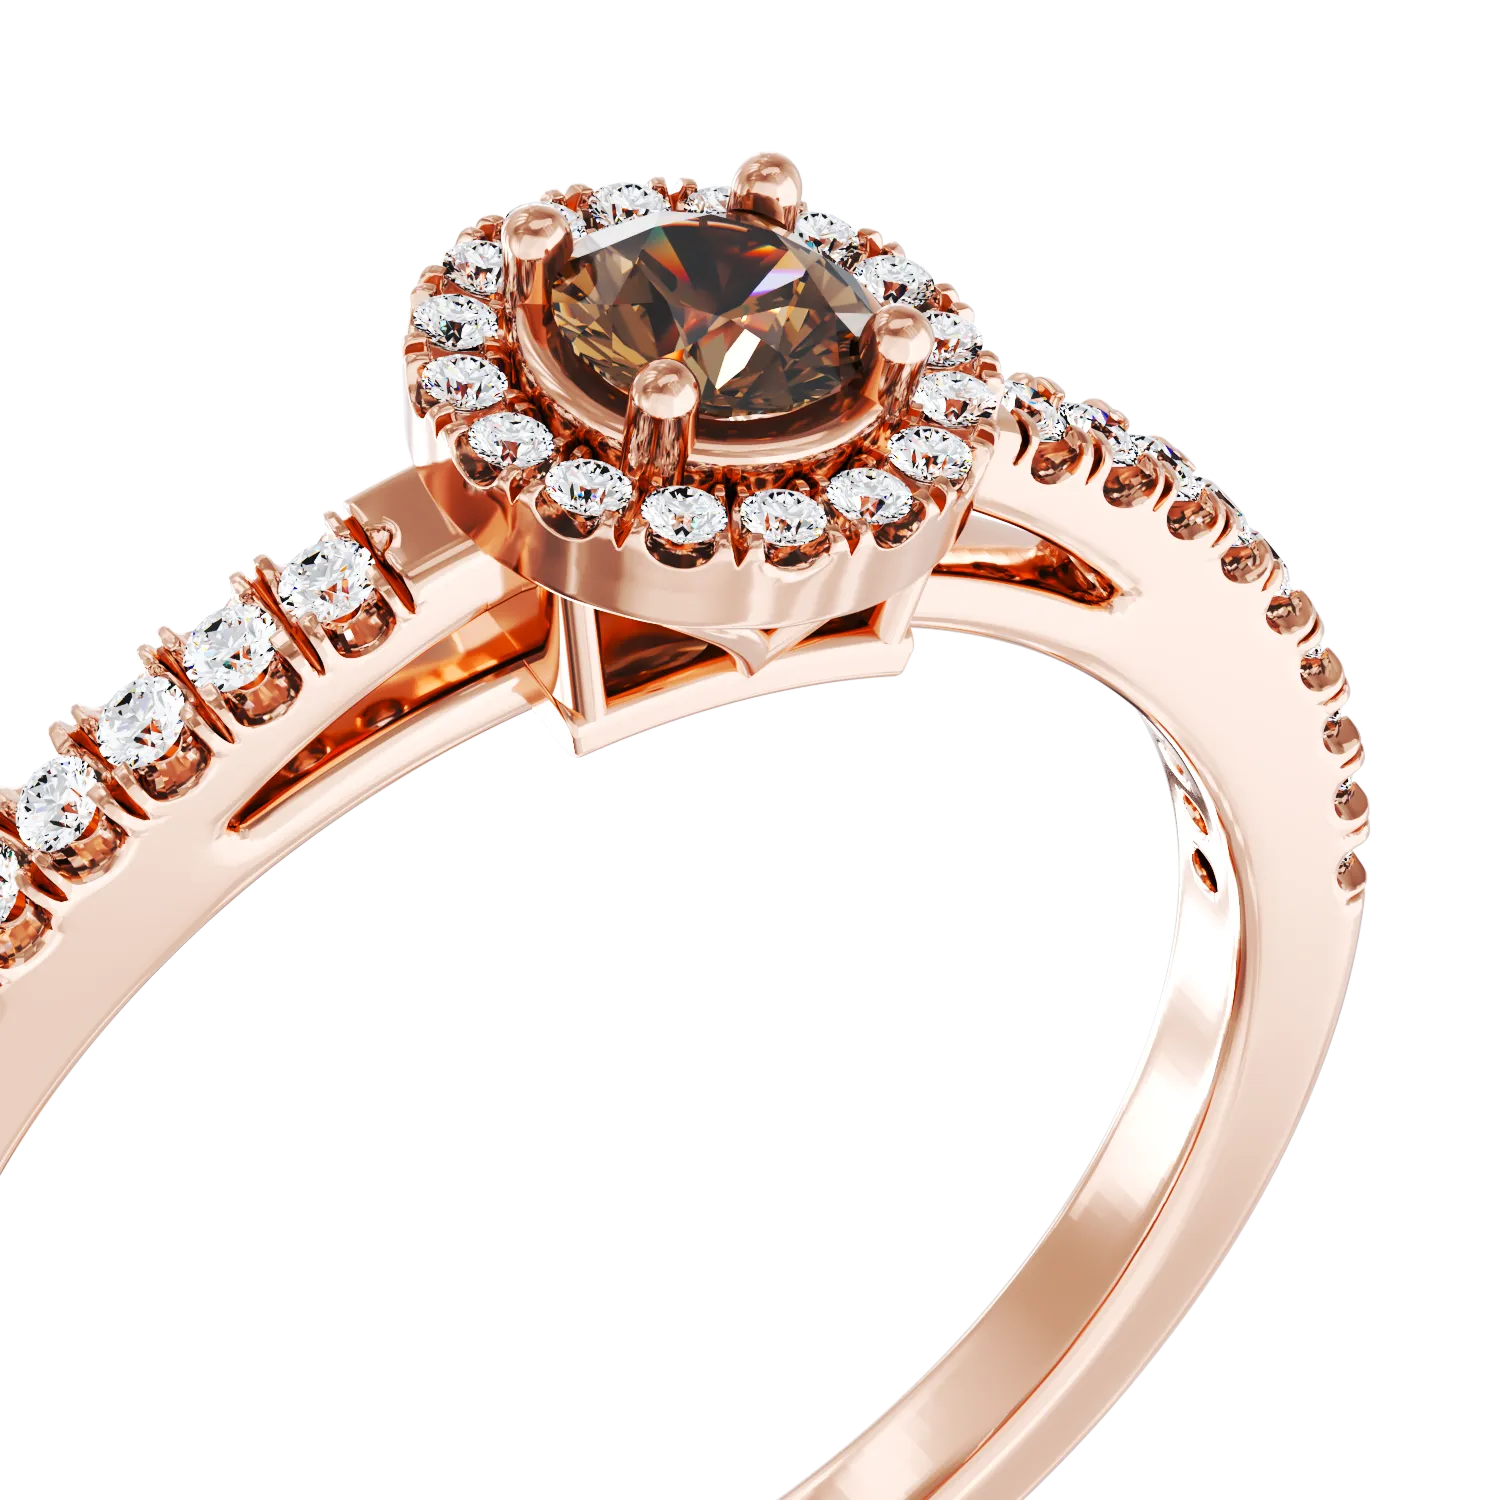 18K rózsa arany eljegyzési gyűrű 0.19ct barna gyémánttal és 0.18ct gyémánttal